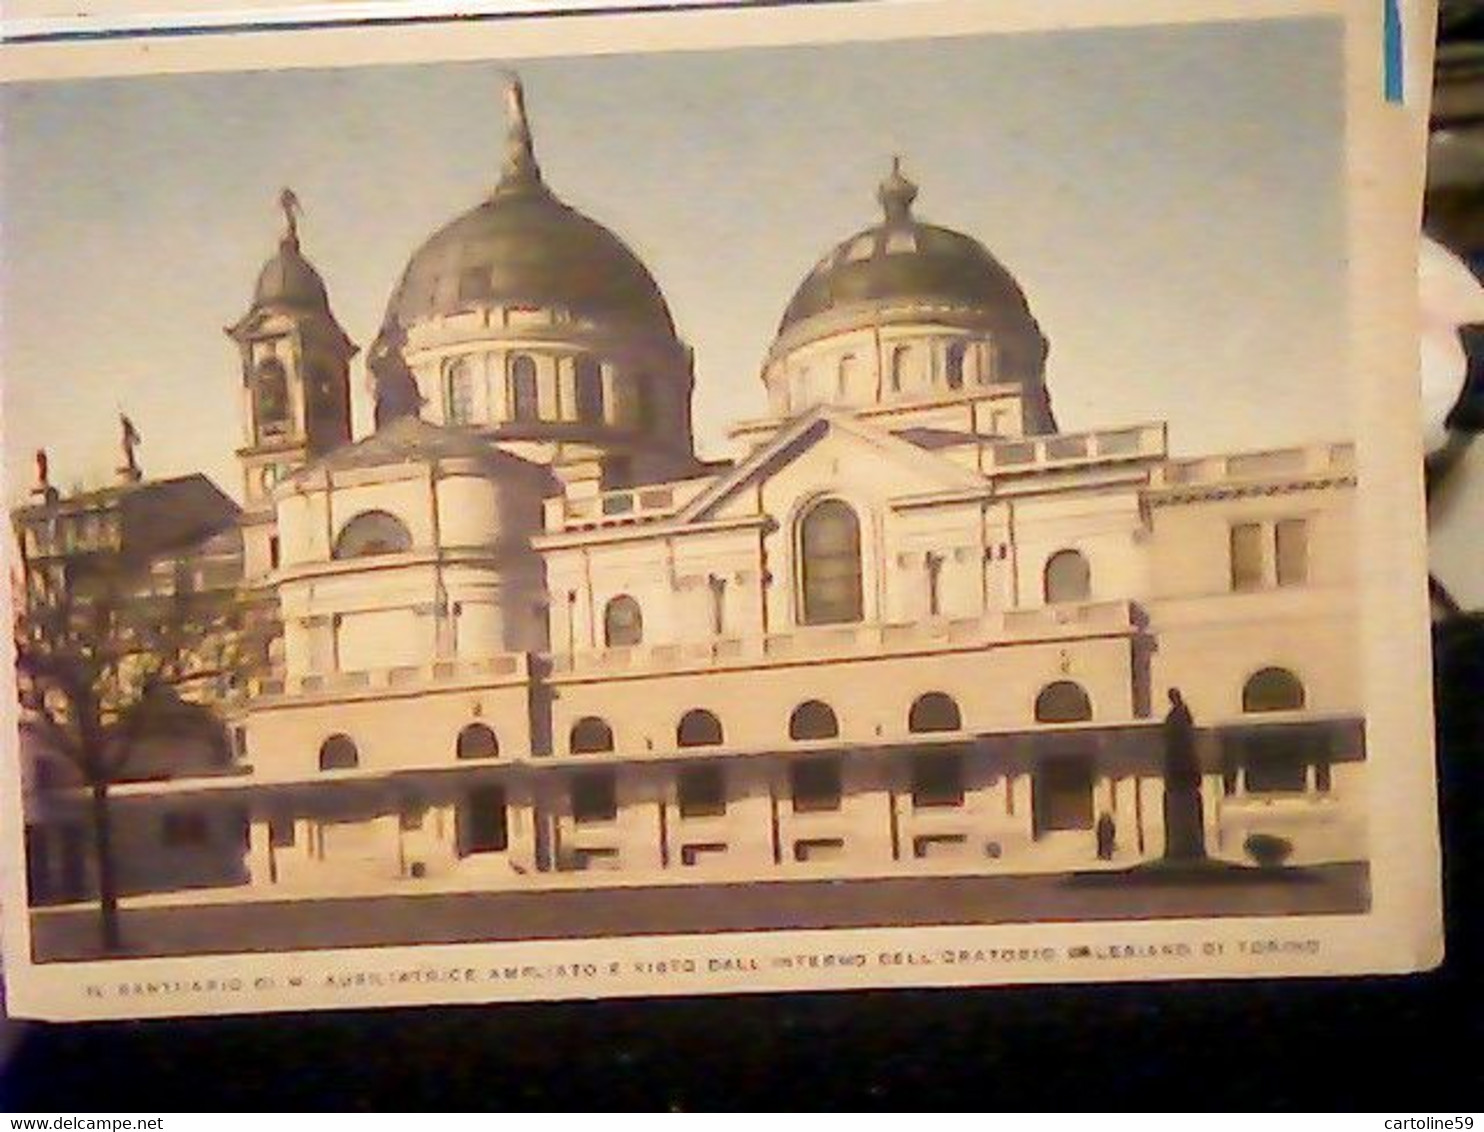 Santuario Di M. Ausiliatrice Ampliato E Visto Dall'interno Dell'oratorio Salesiano Di Torino N1940  IZ4862 - Collections & Lots